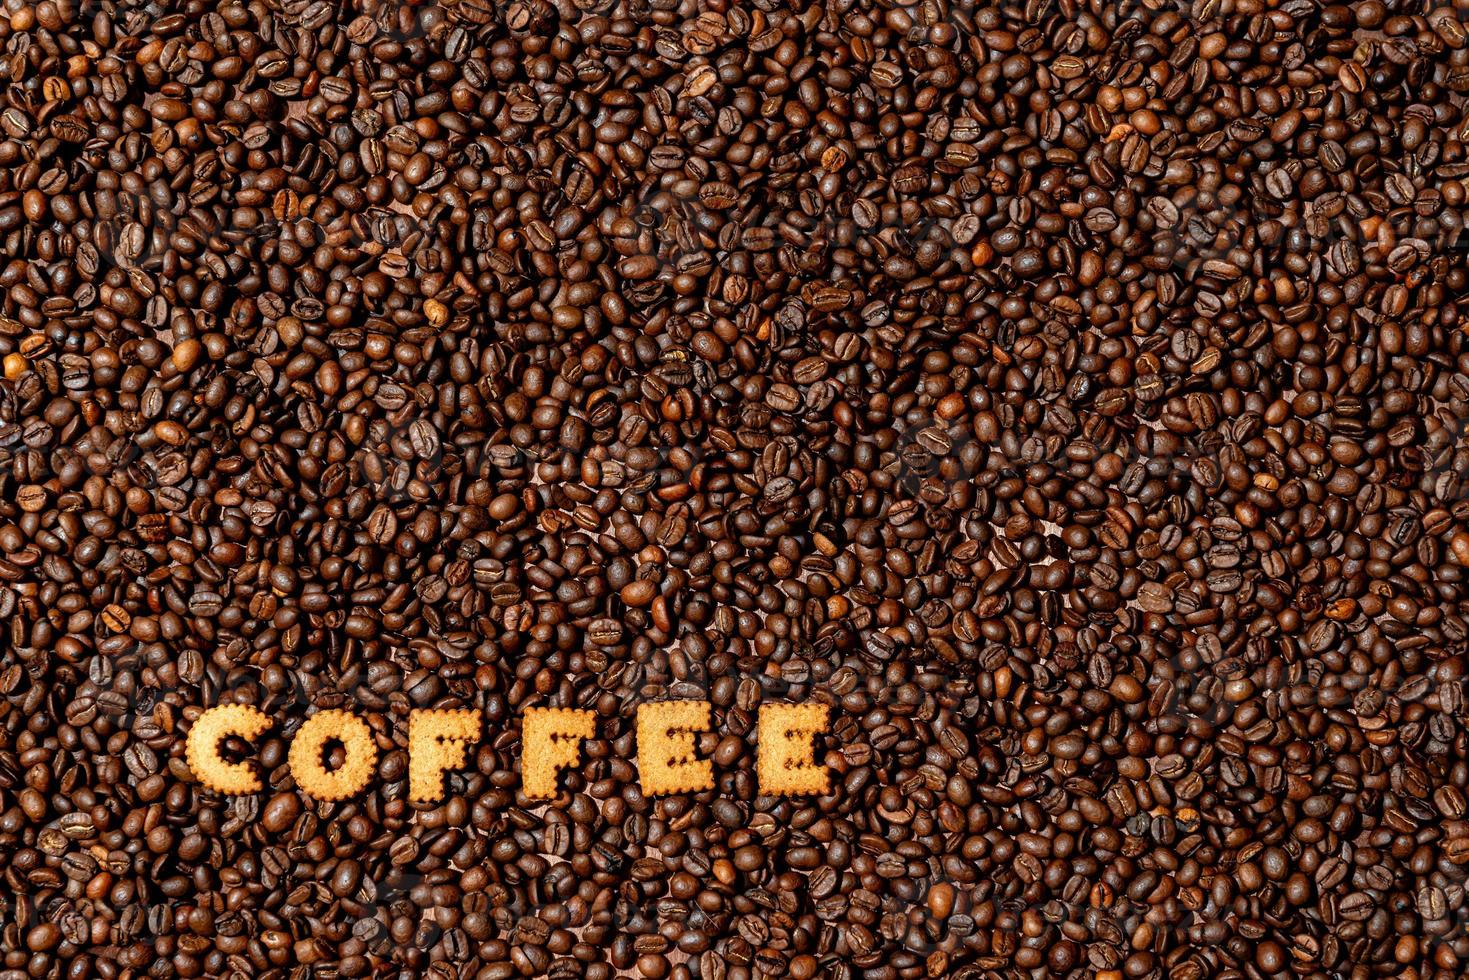 das Wort Kaffee aus Keksbuchstaben auf einem dunklen Kaffeebohnenhintergrund foto